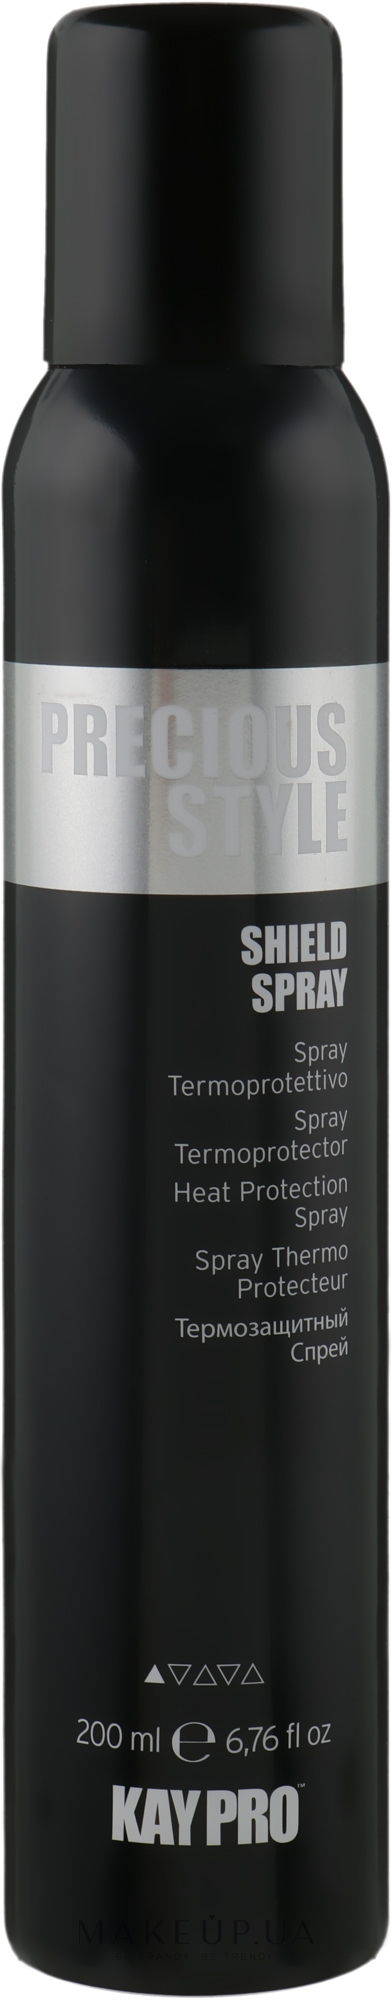 Термозащитный спрей с аргановым маслом - KayPro Precious Style Shield Spray — фото 200ml